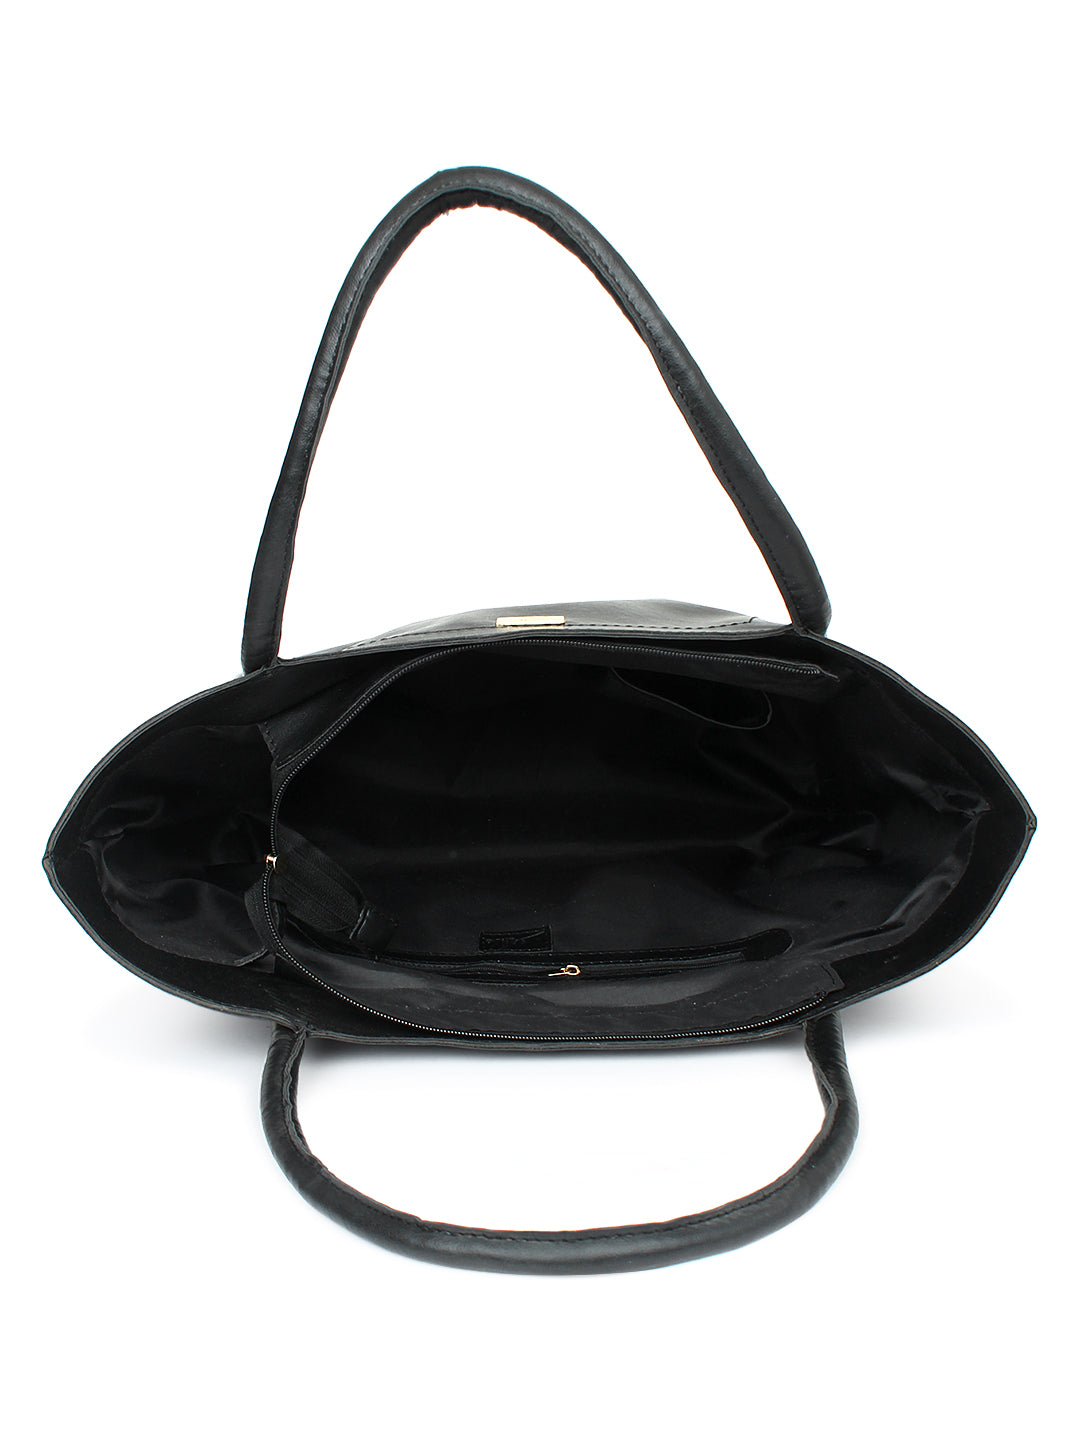 Black Spacious Tote Bag in Bag